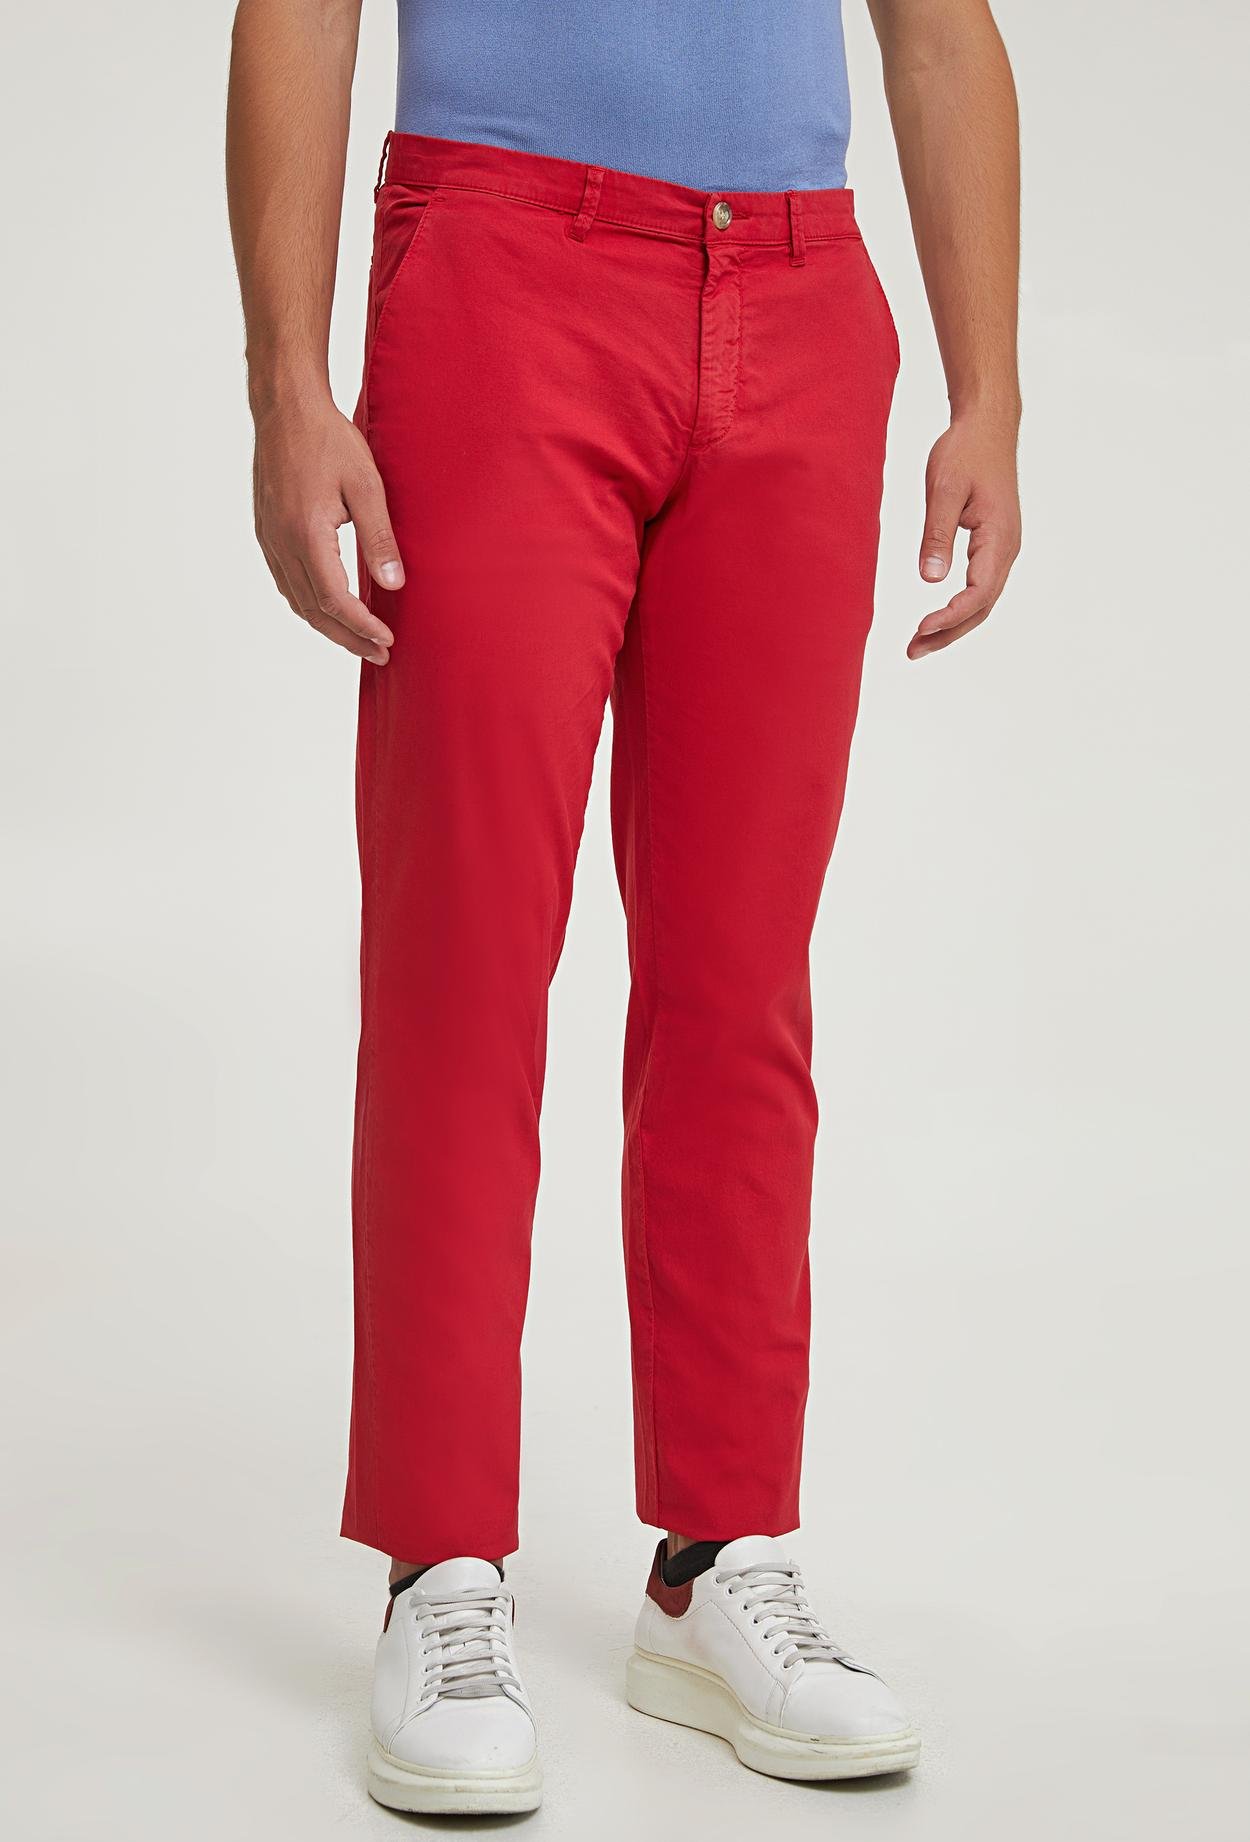 Ds Damat Slim Fit Kırmızı Düz Chino Pantolon